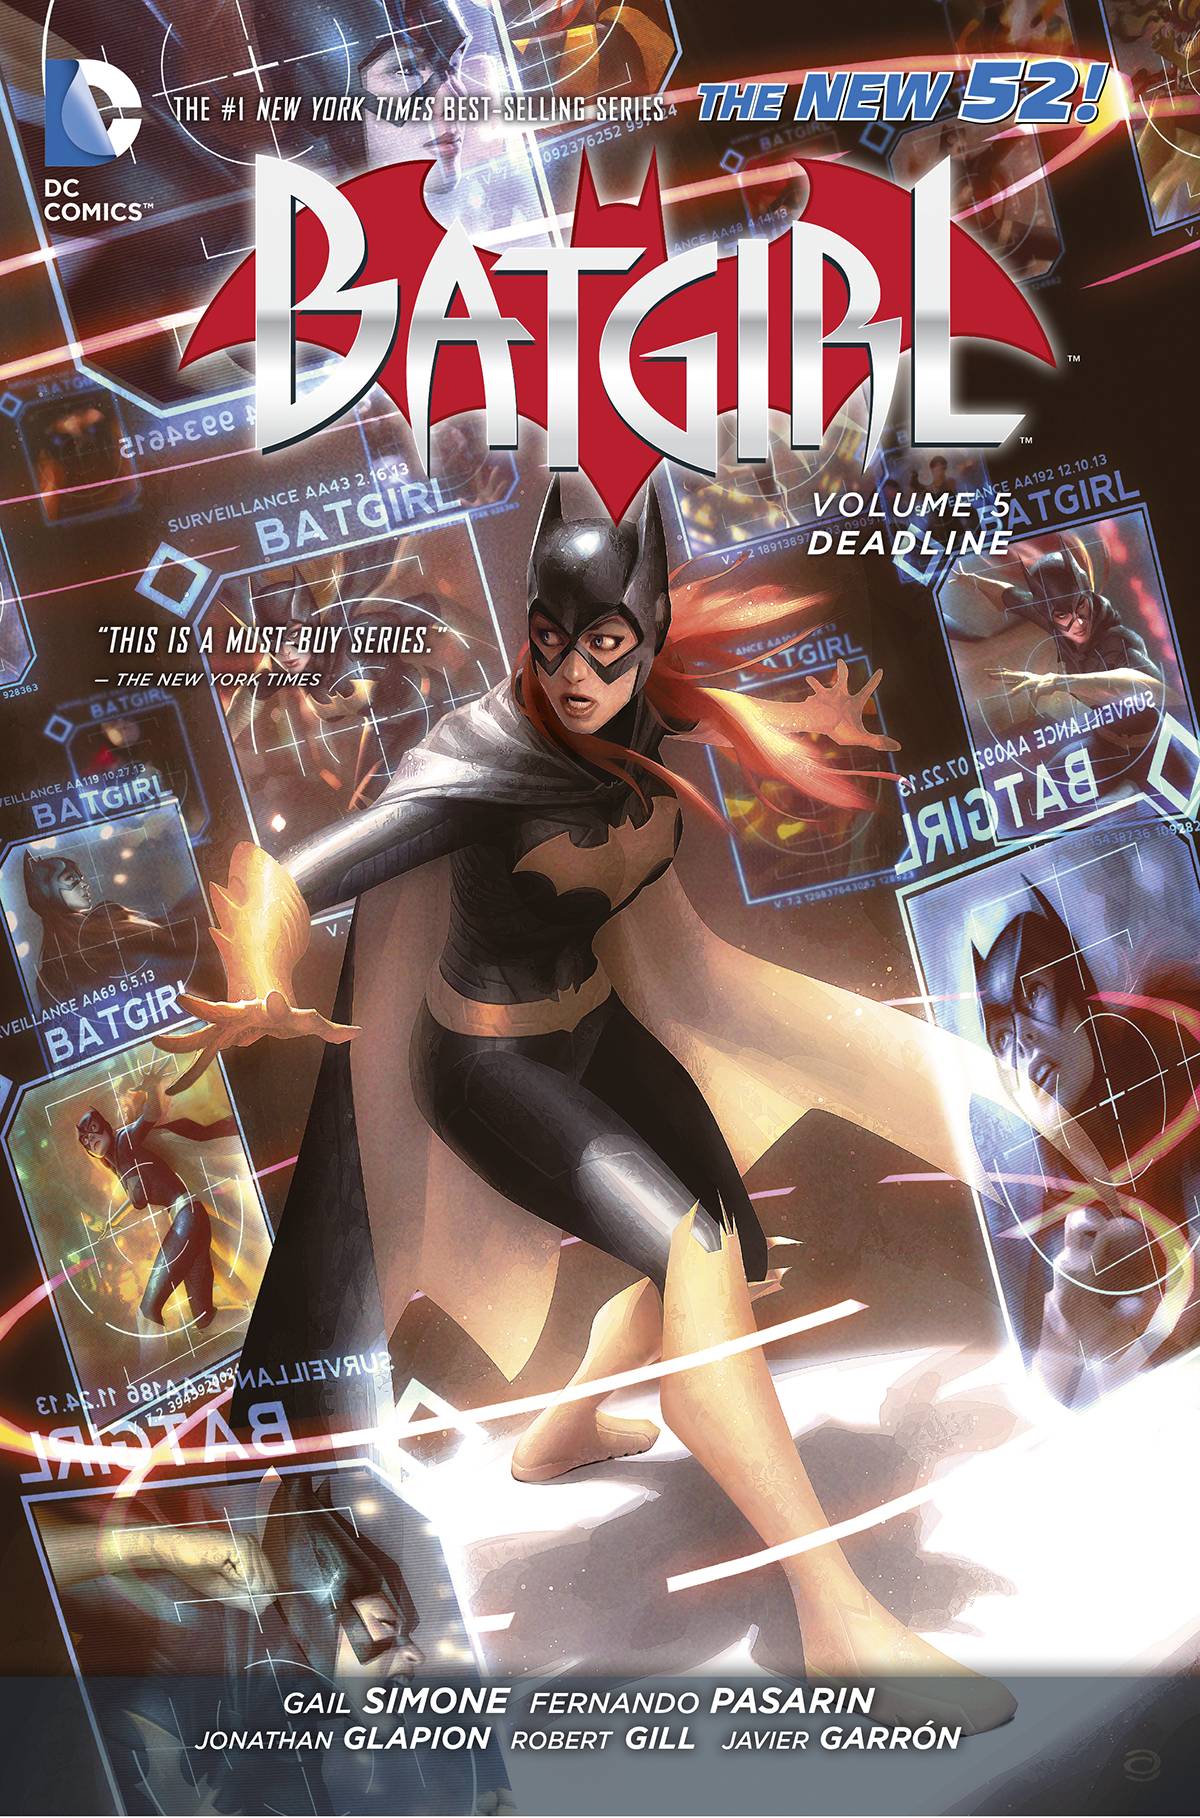 Batgirl Graphic Novel Volume 5 Deadline (New 52)